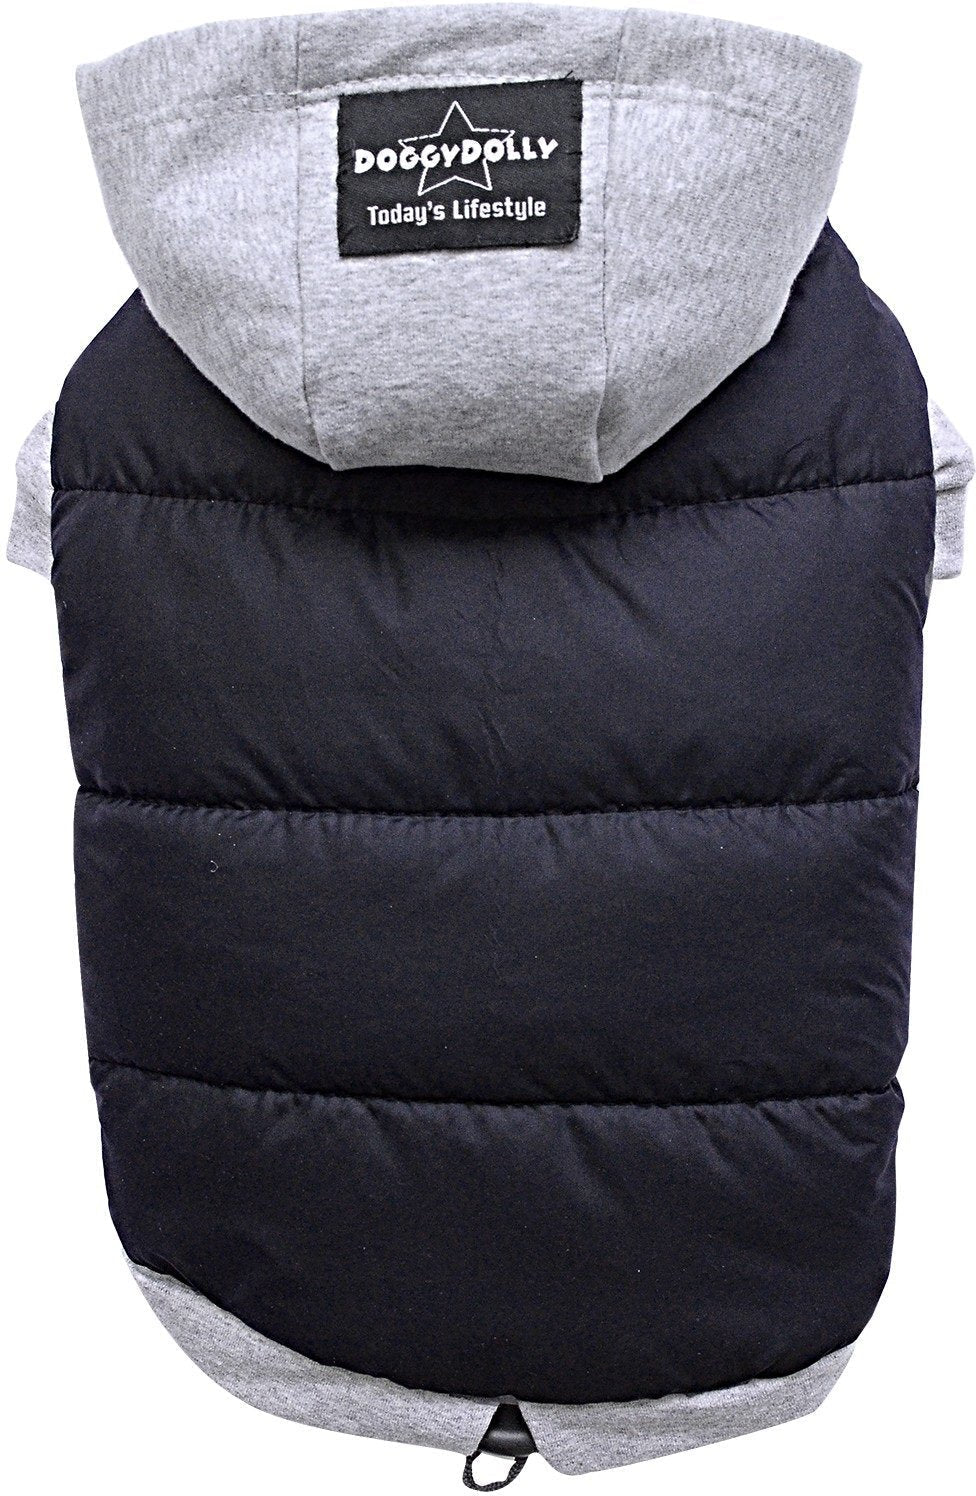 Doggydolly Winter Dog Jacket/Dog coat with Hood, 2X-Large, Black-Grey - PawsPlanet Australia